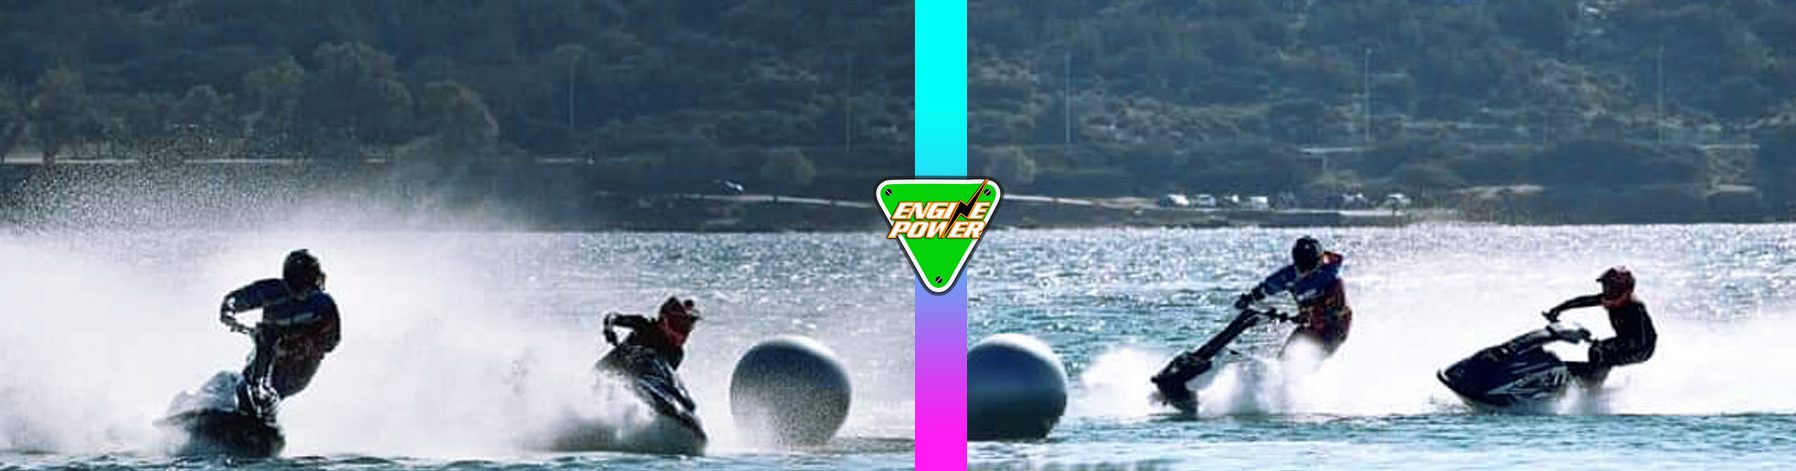 jet-maro-sakellaropoulou-jetski-motorsport-sea-champion-passion-jet-kungfu-marw-sakellaropoulou-jet-ski